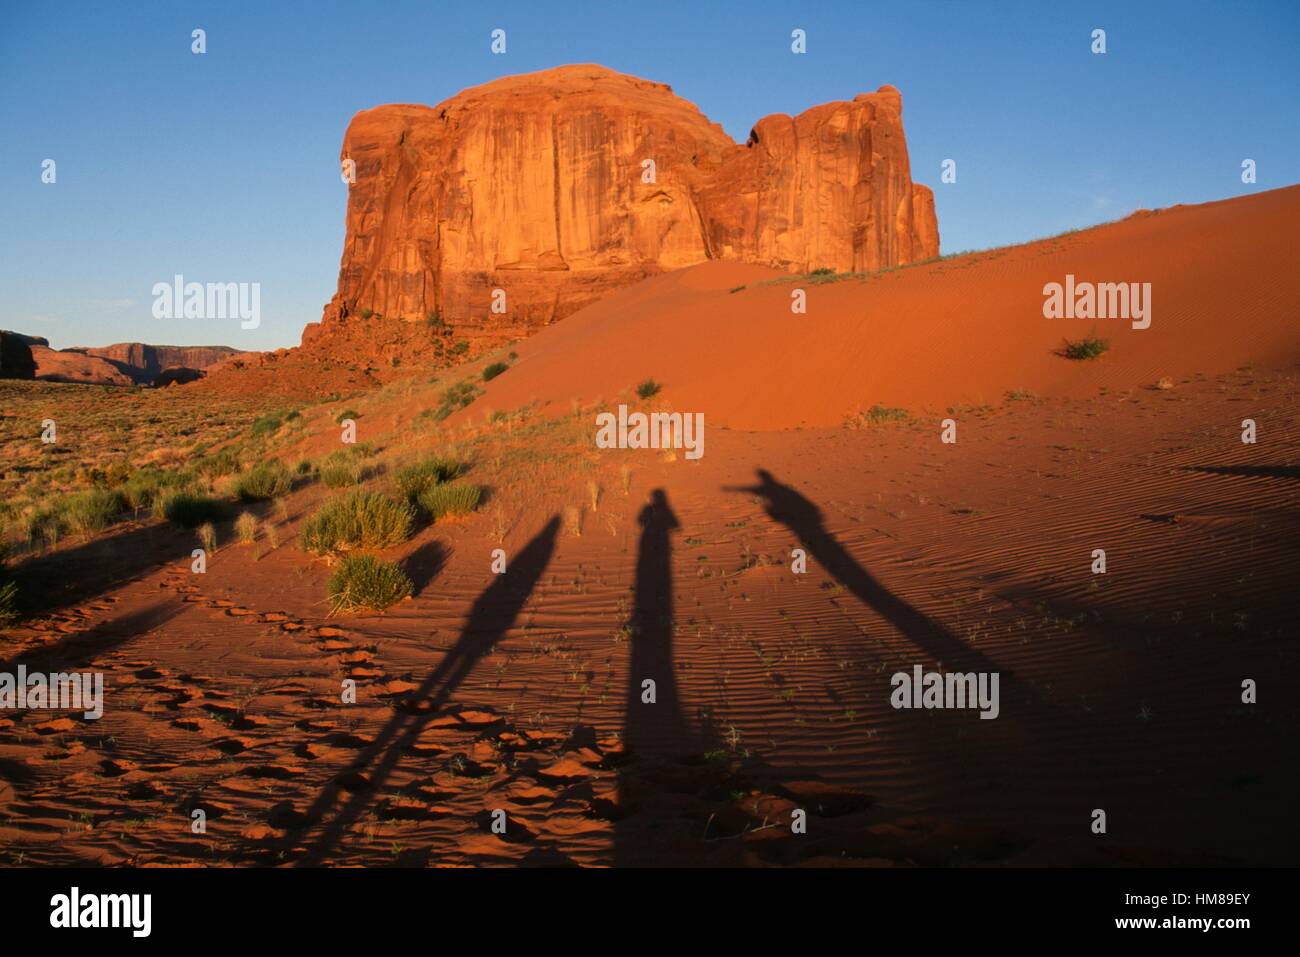 Dieu pluie Mesa à l'aube, sable, printemps, Monument Valley Navajo Tribal Park, Utah et Arizona, États-Unis d'Amérique. Banque D'Images